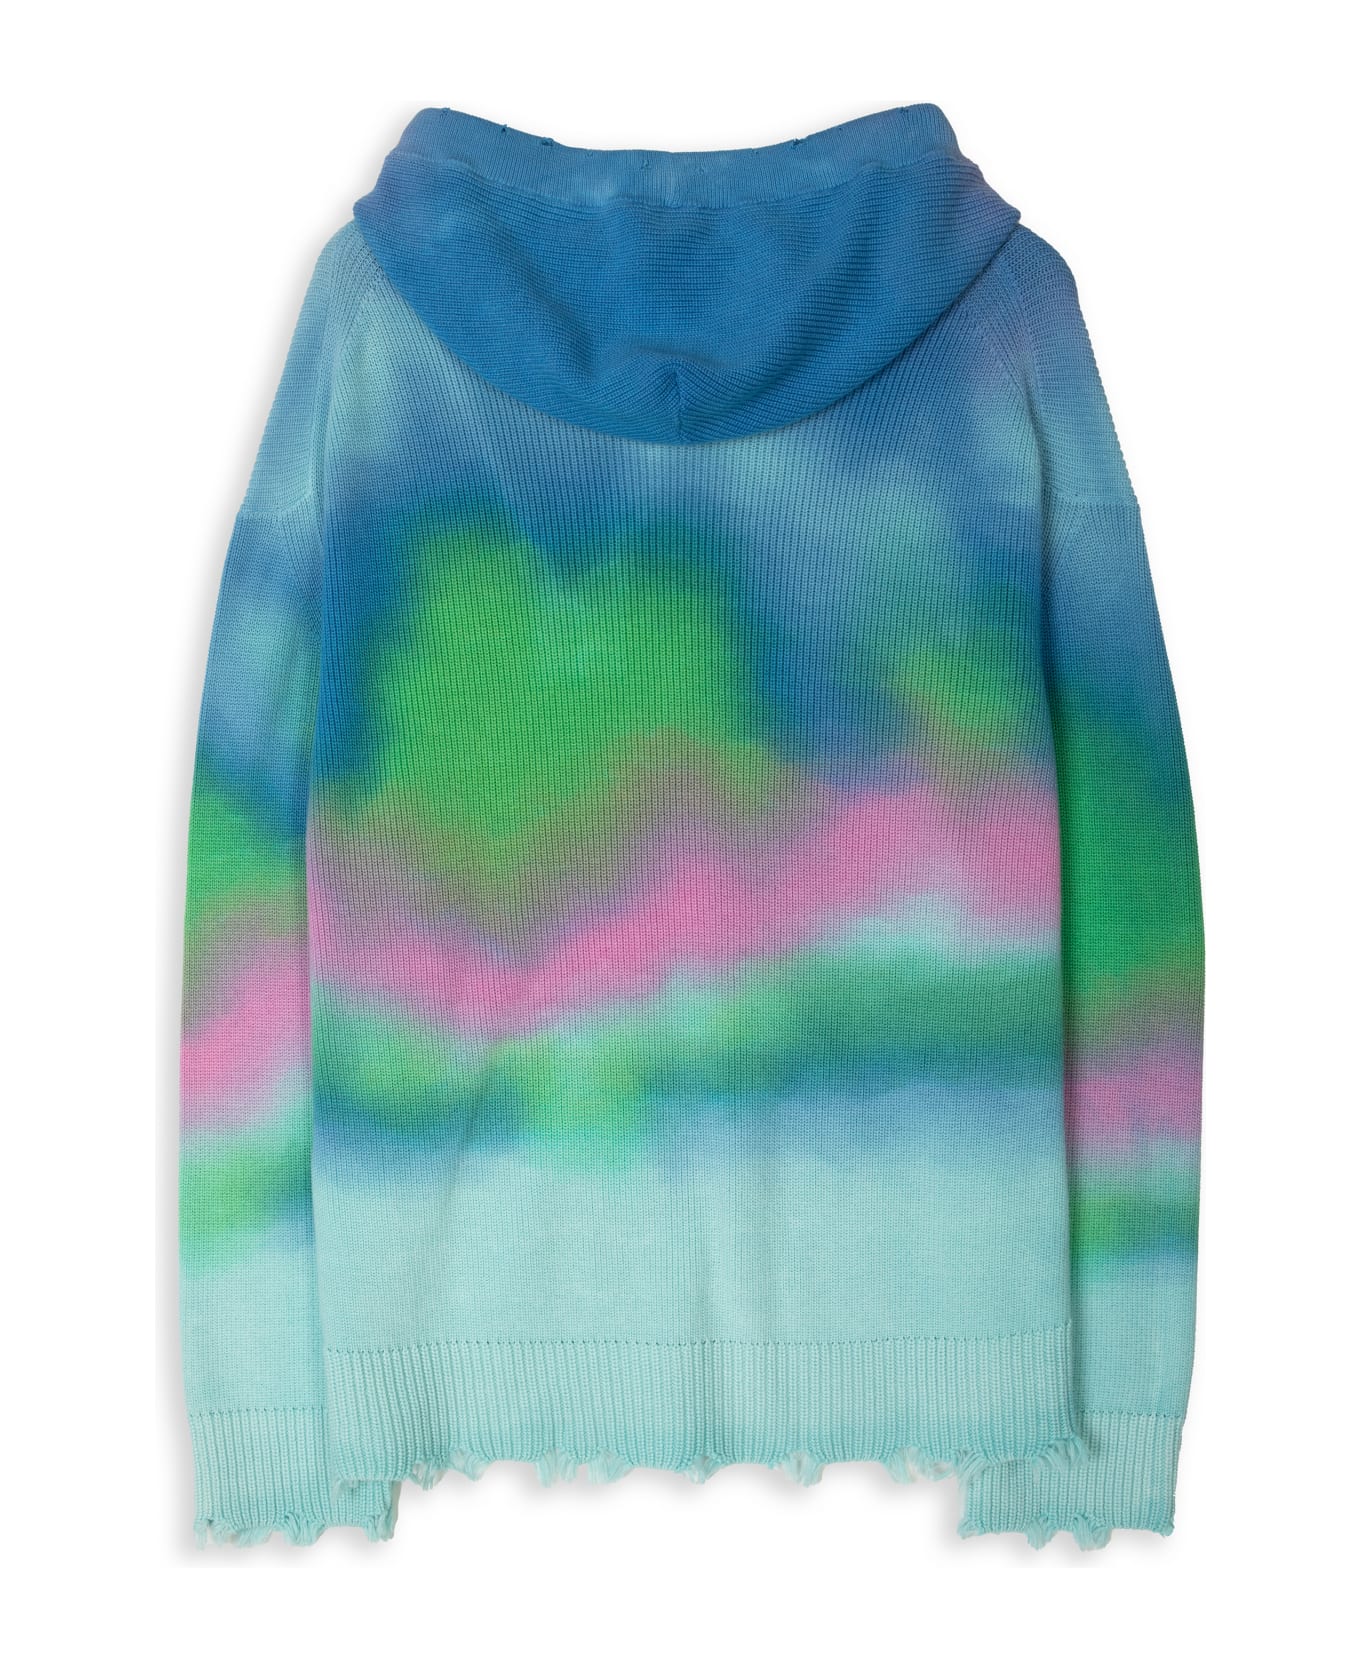 Laneus Cappuccio Multicolor Print Multicolor Tie-dye Cotton Hooded Sweater Laneus - MULTICOLOR